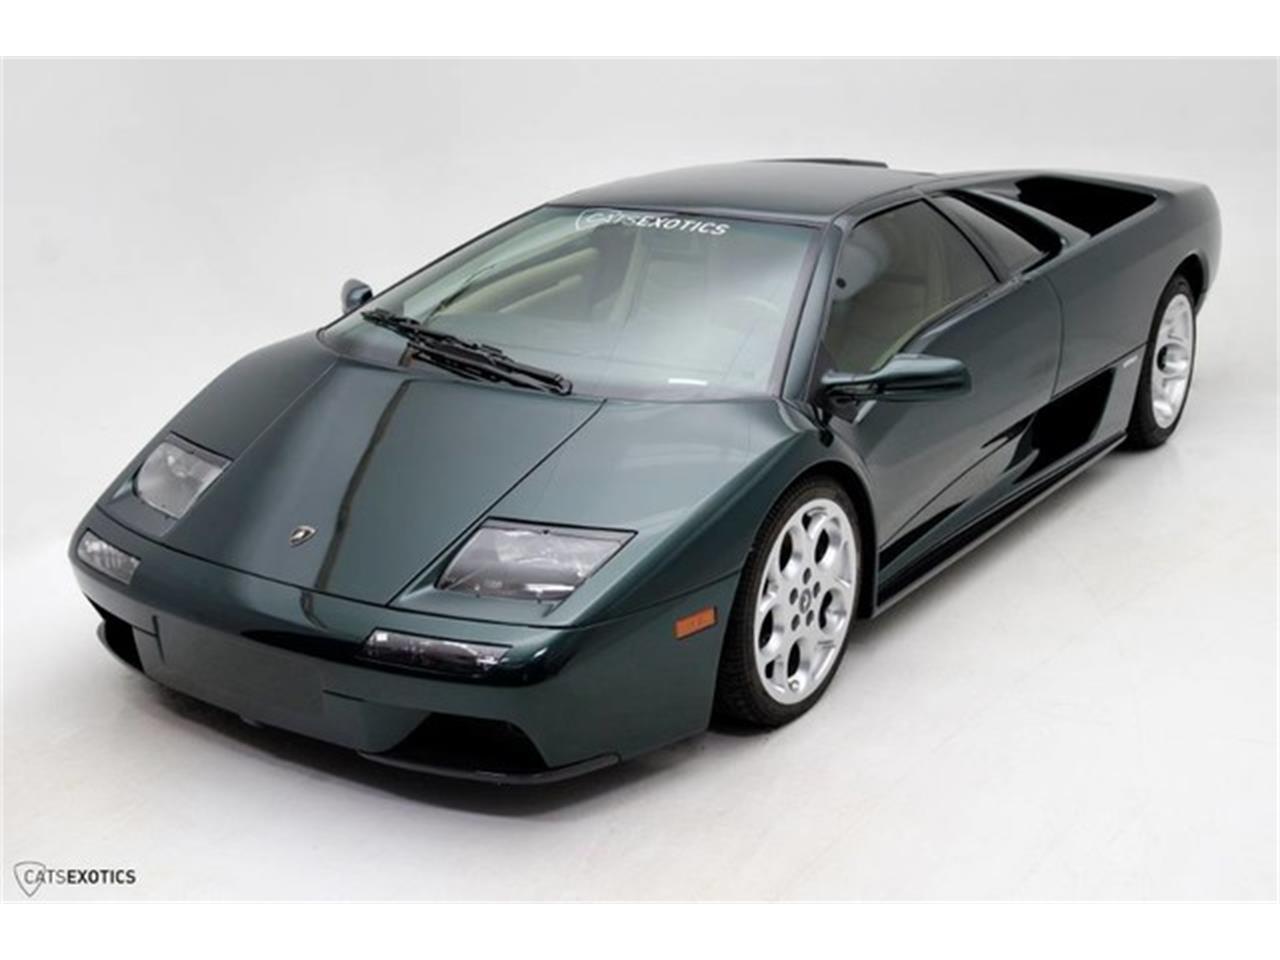 2001 Lamborghini Diablo for sale in Seattle, WA ...